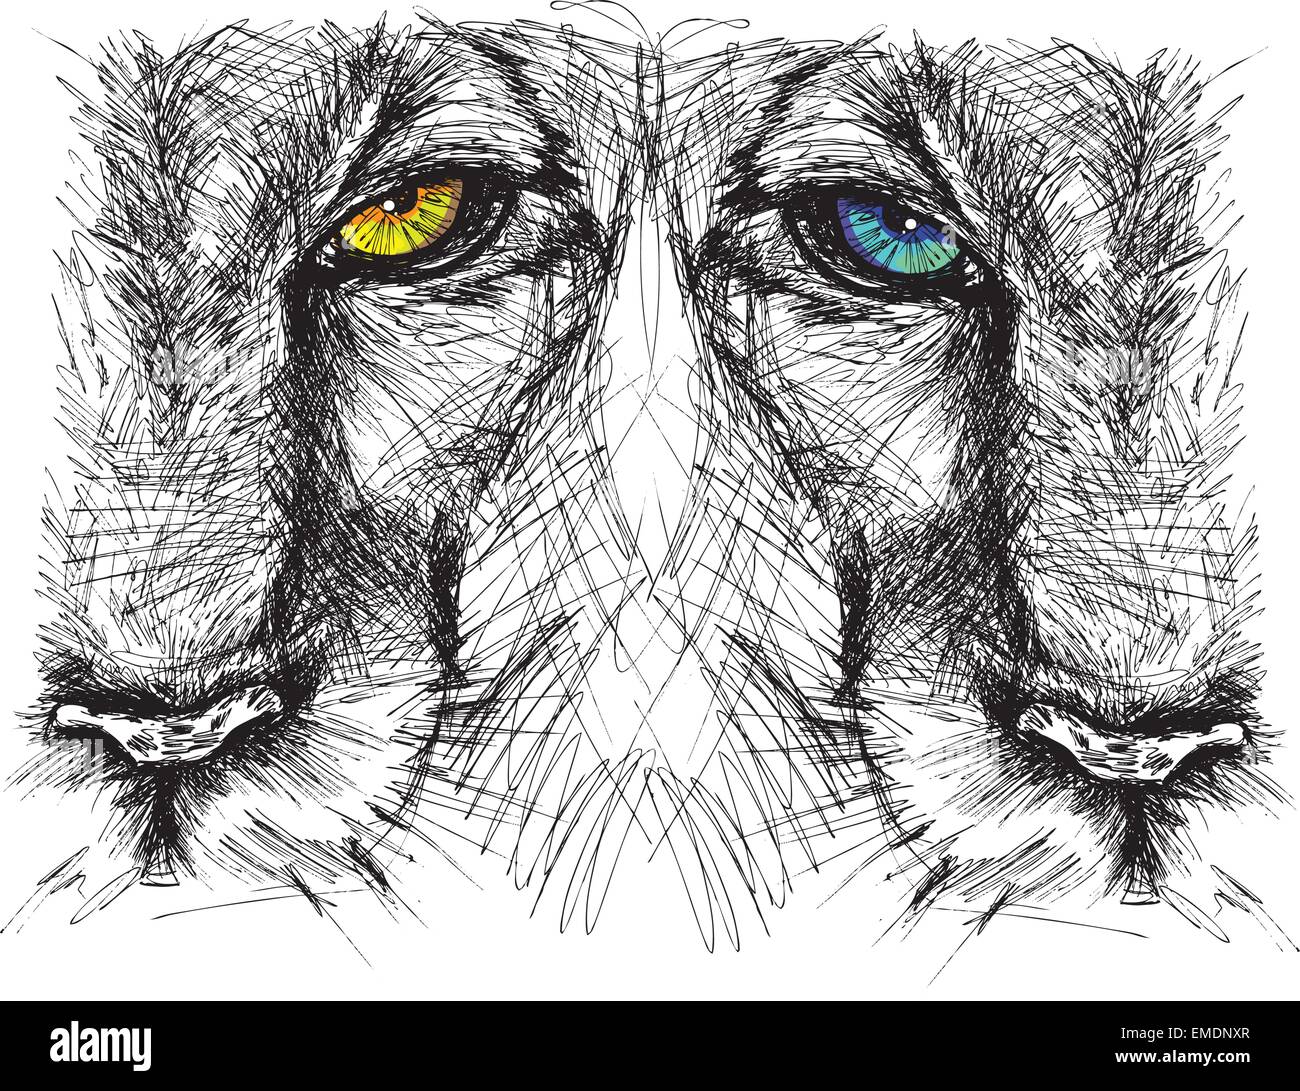 Handgezeichnete Skizze eines Löwen unverwandt in die Kamera schaut Stock Vektor